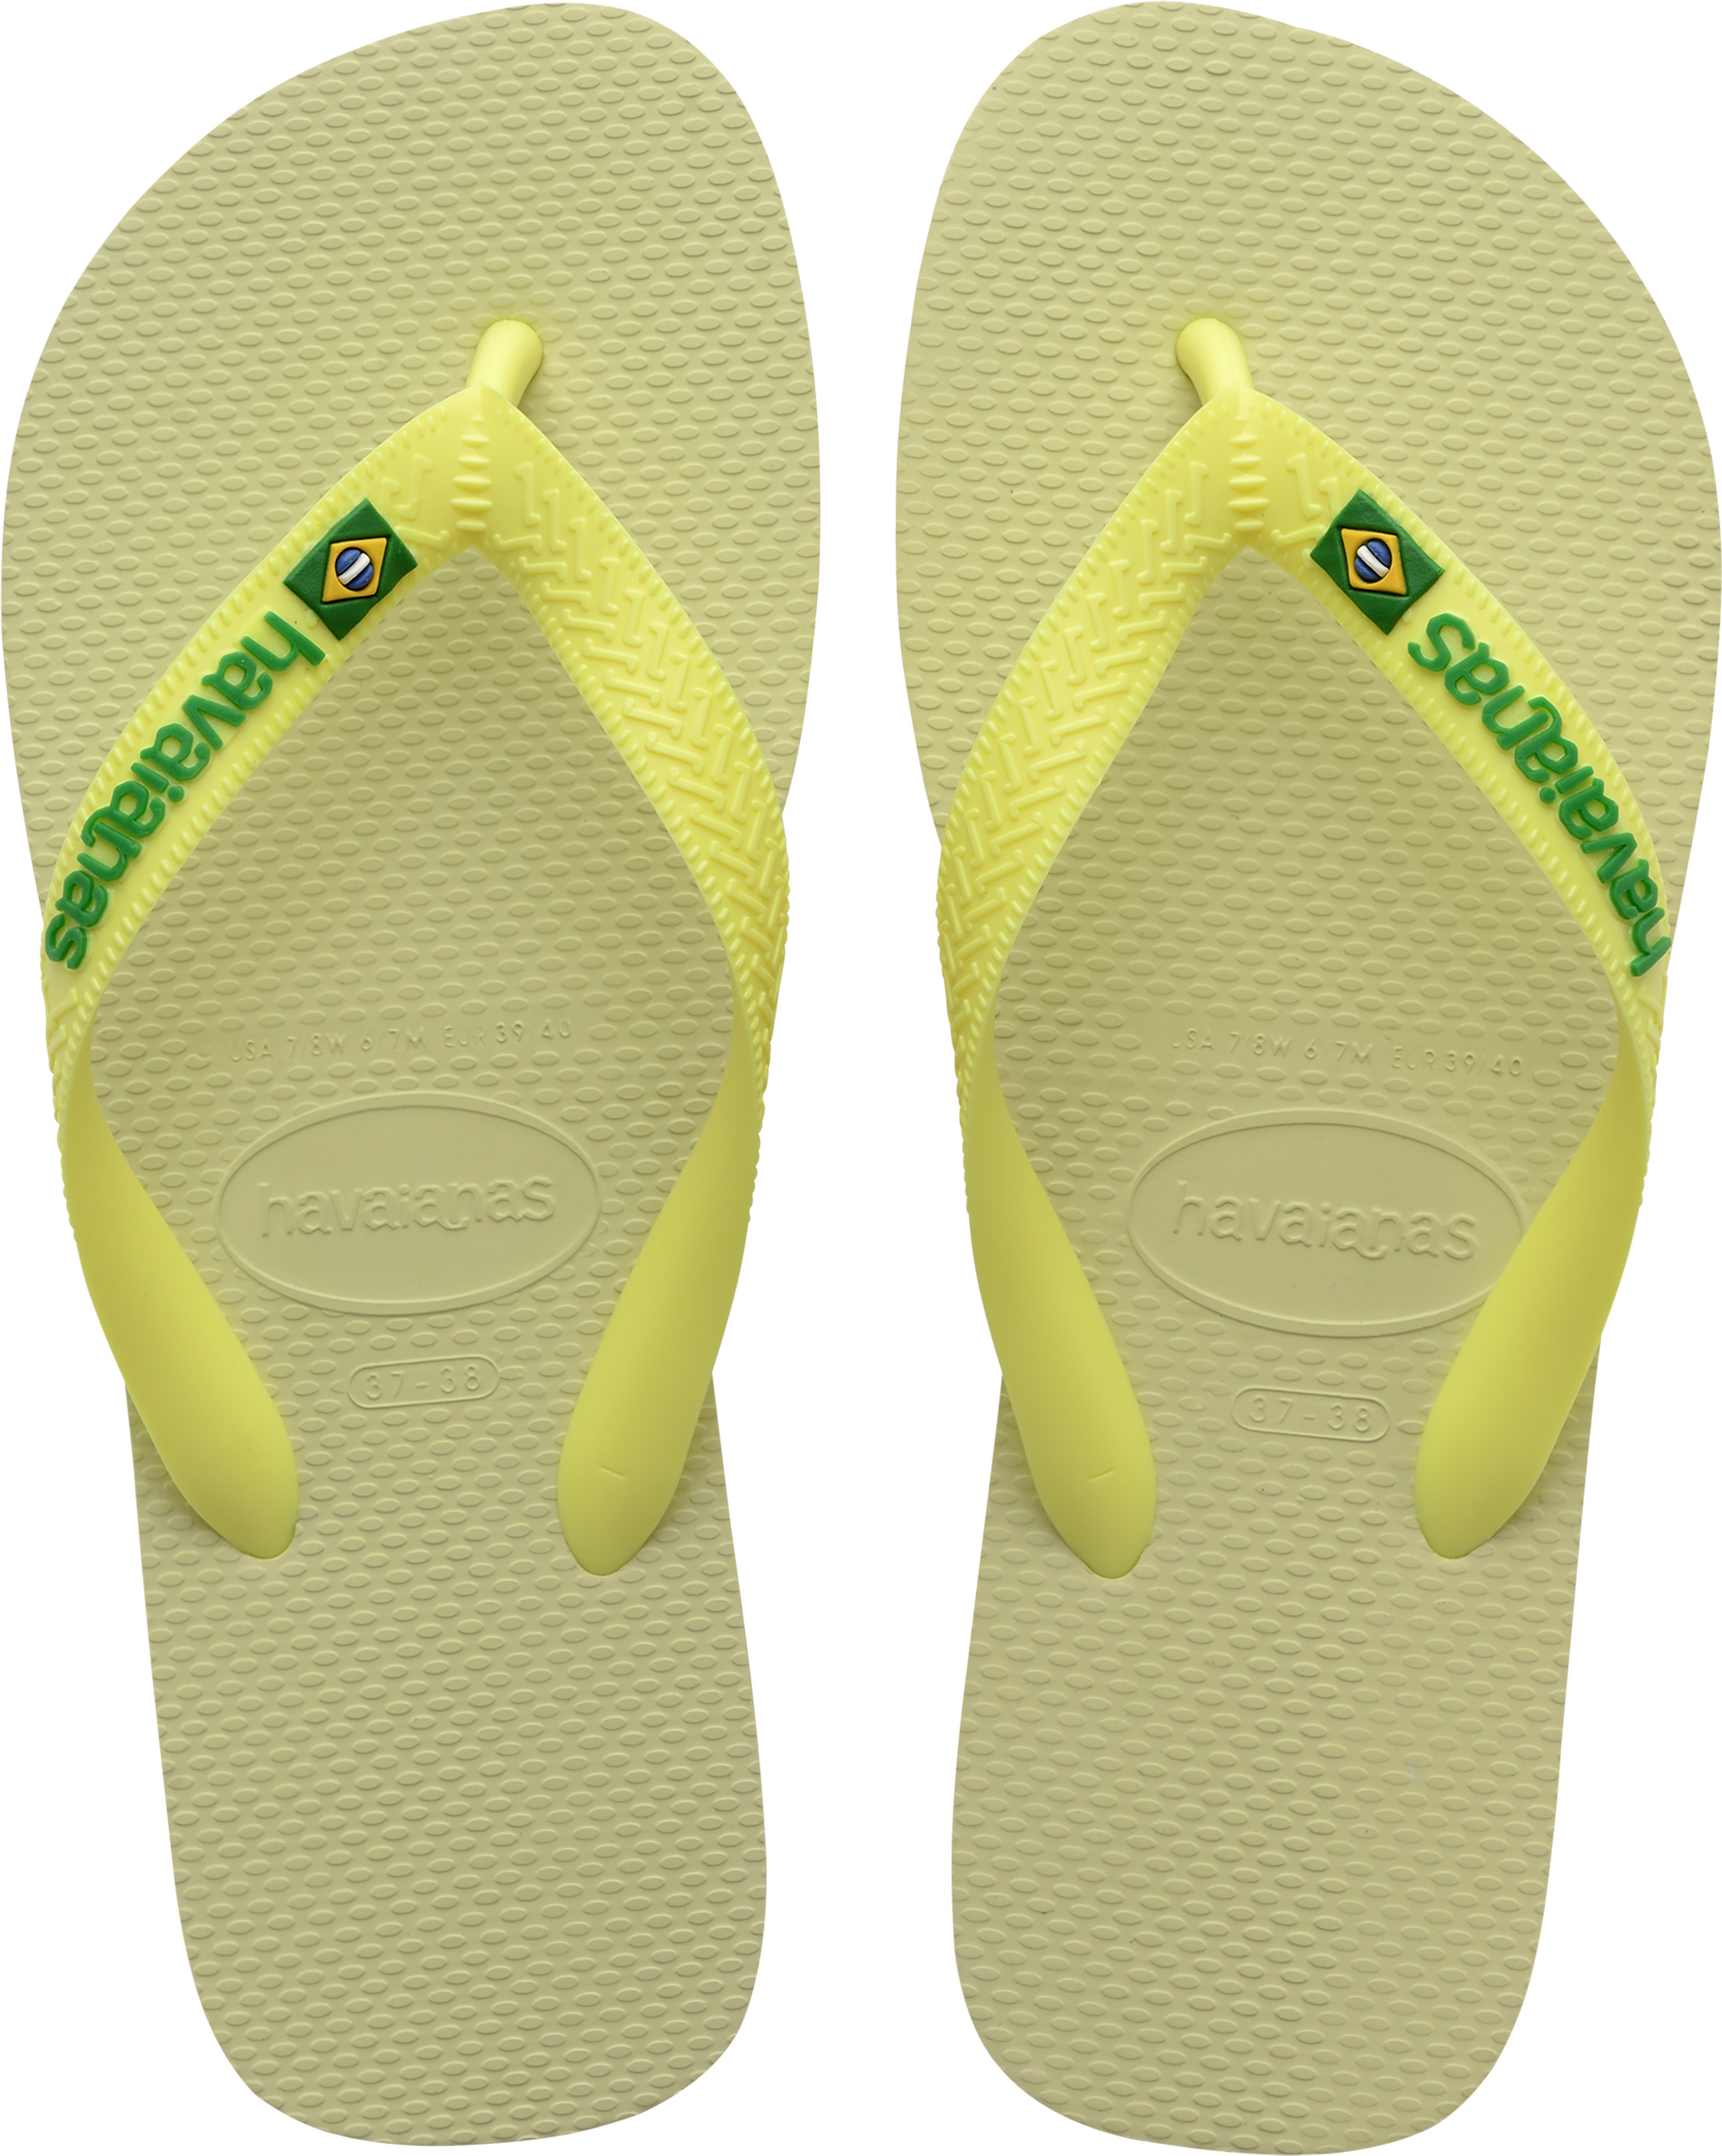 Havaianas Lime Green Brazil Logo size 9/10